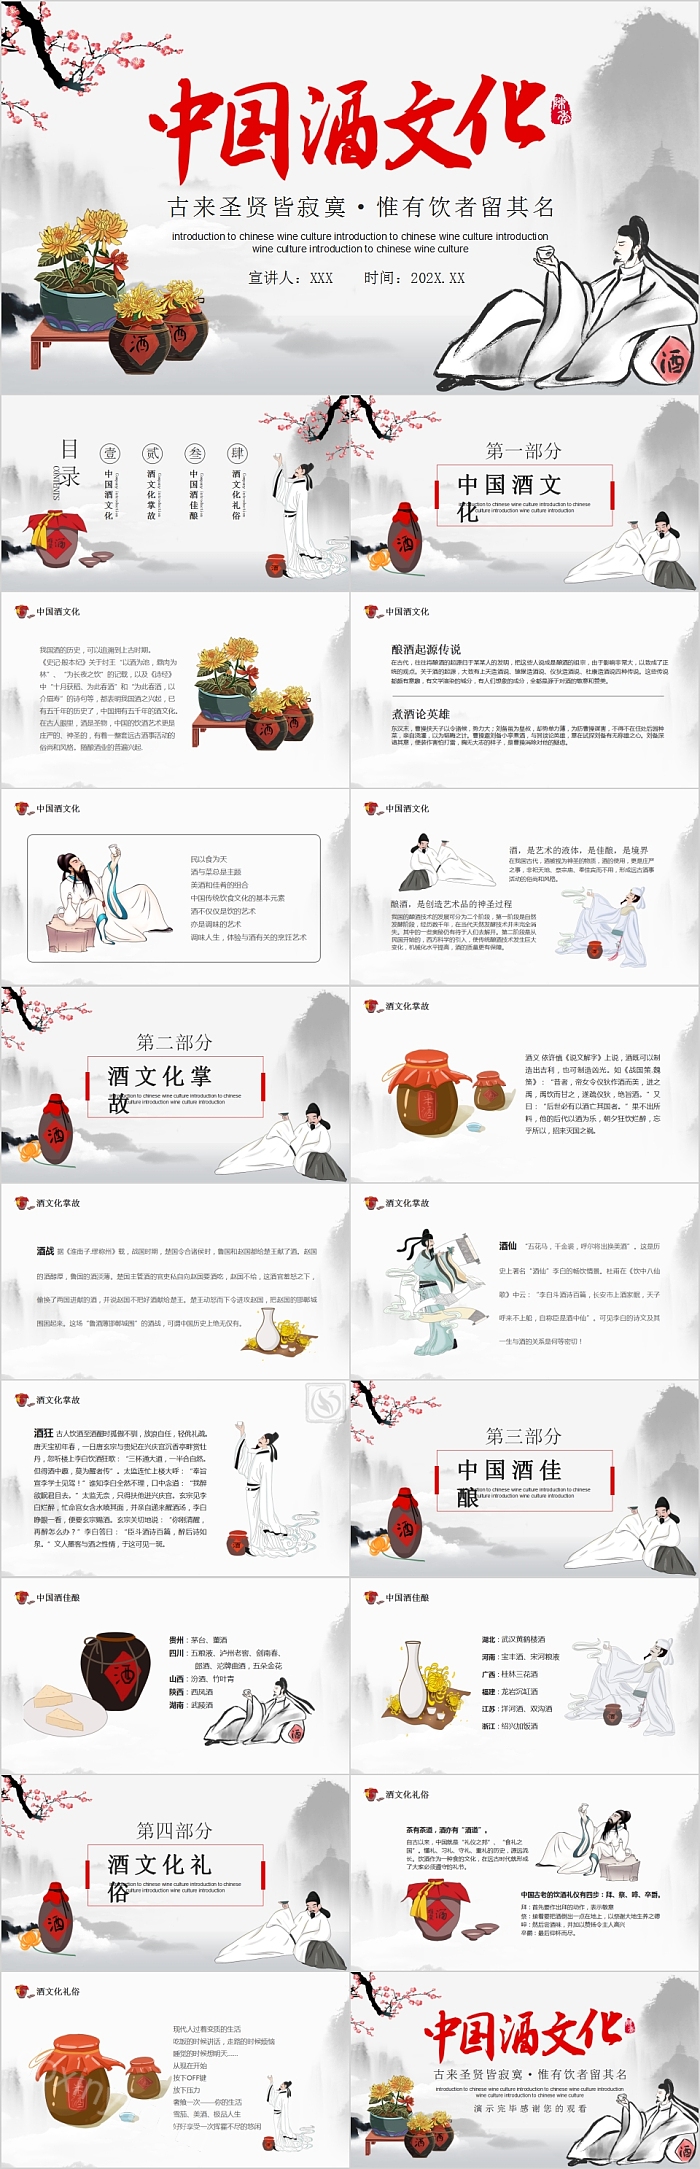 中国白酒基础知识中国酒文化PPT模板